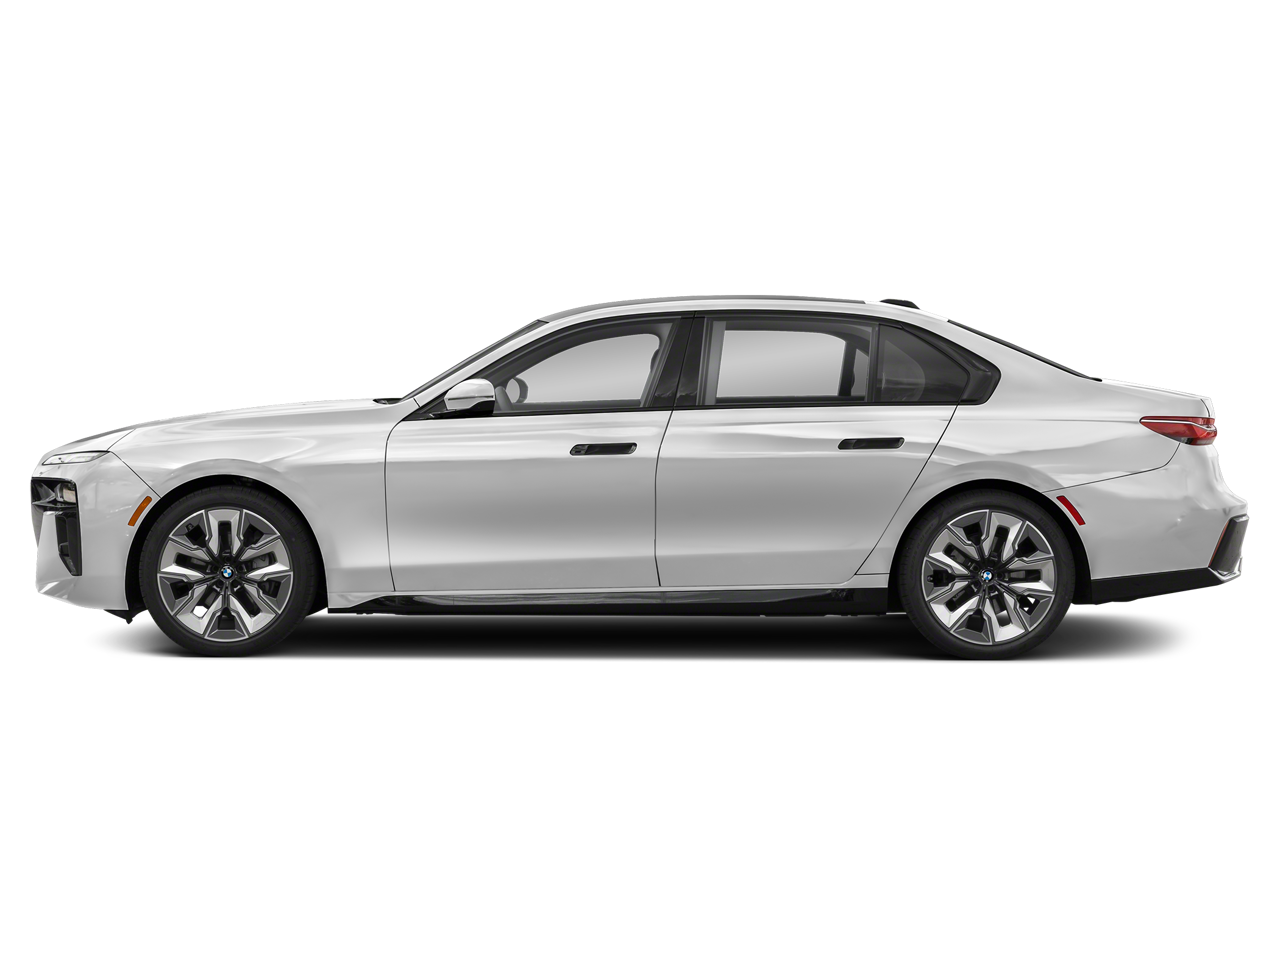 BMW 745e exterior - Side Profile